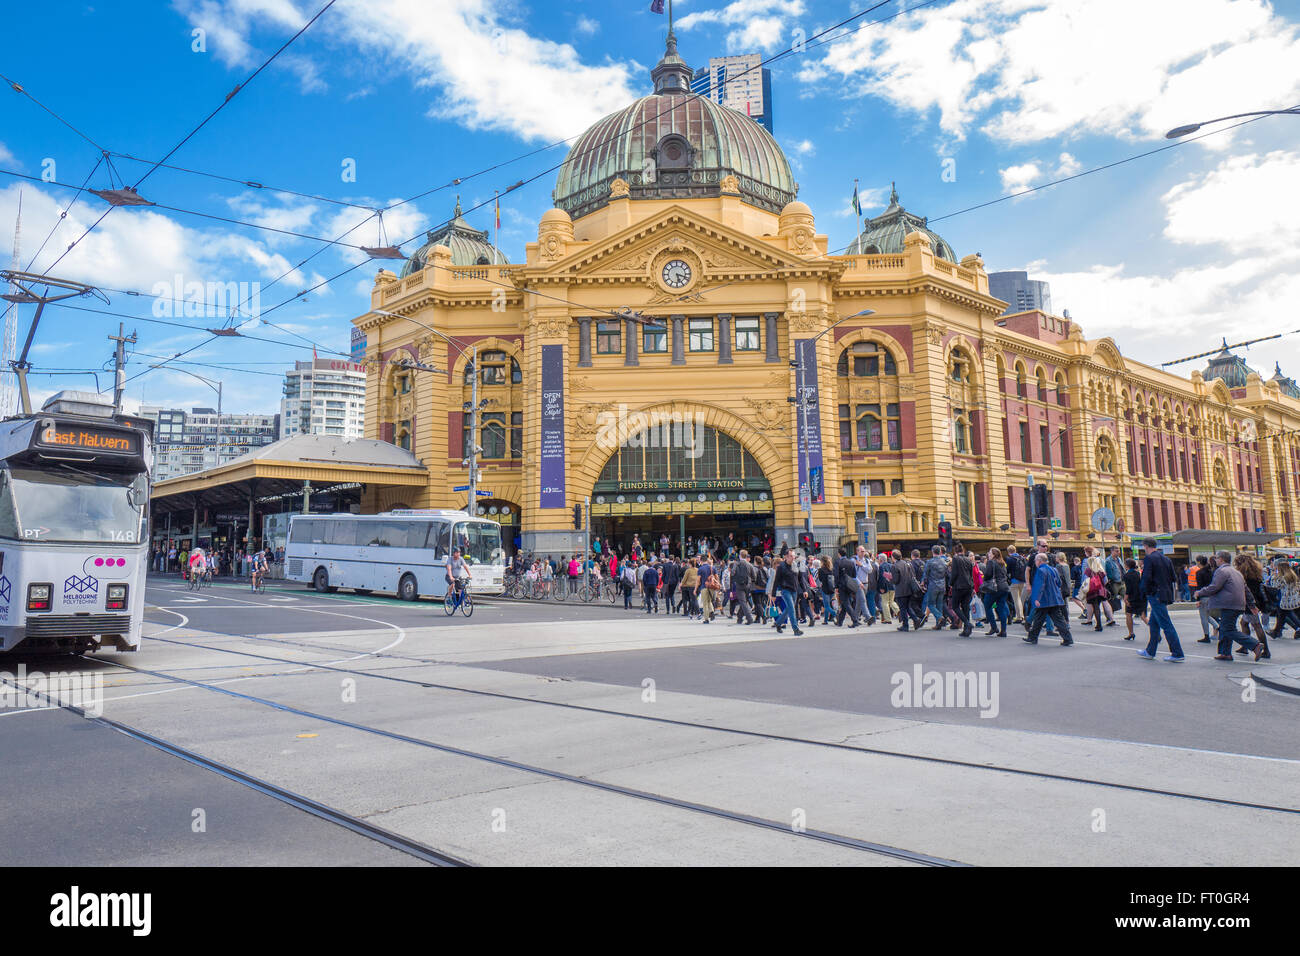 La gare de Flinders Street est un célèbre monument à Melbourne. Banque D'Images